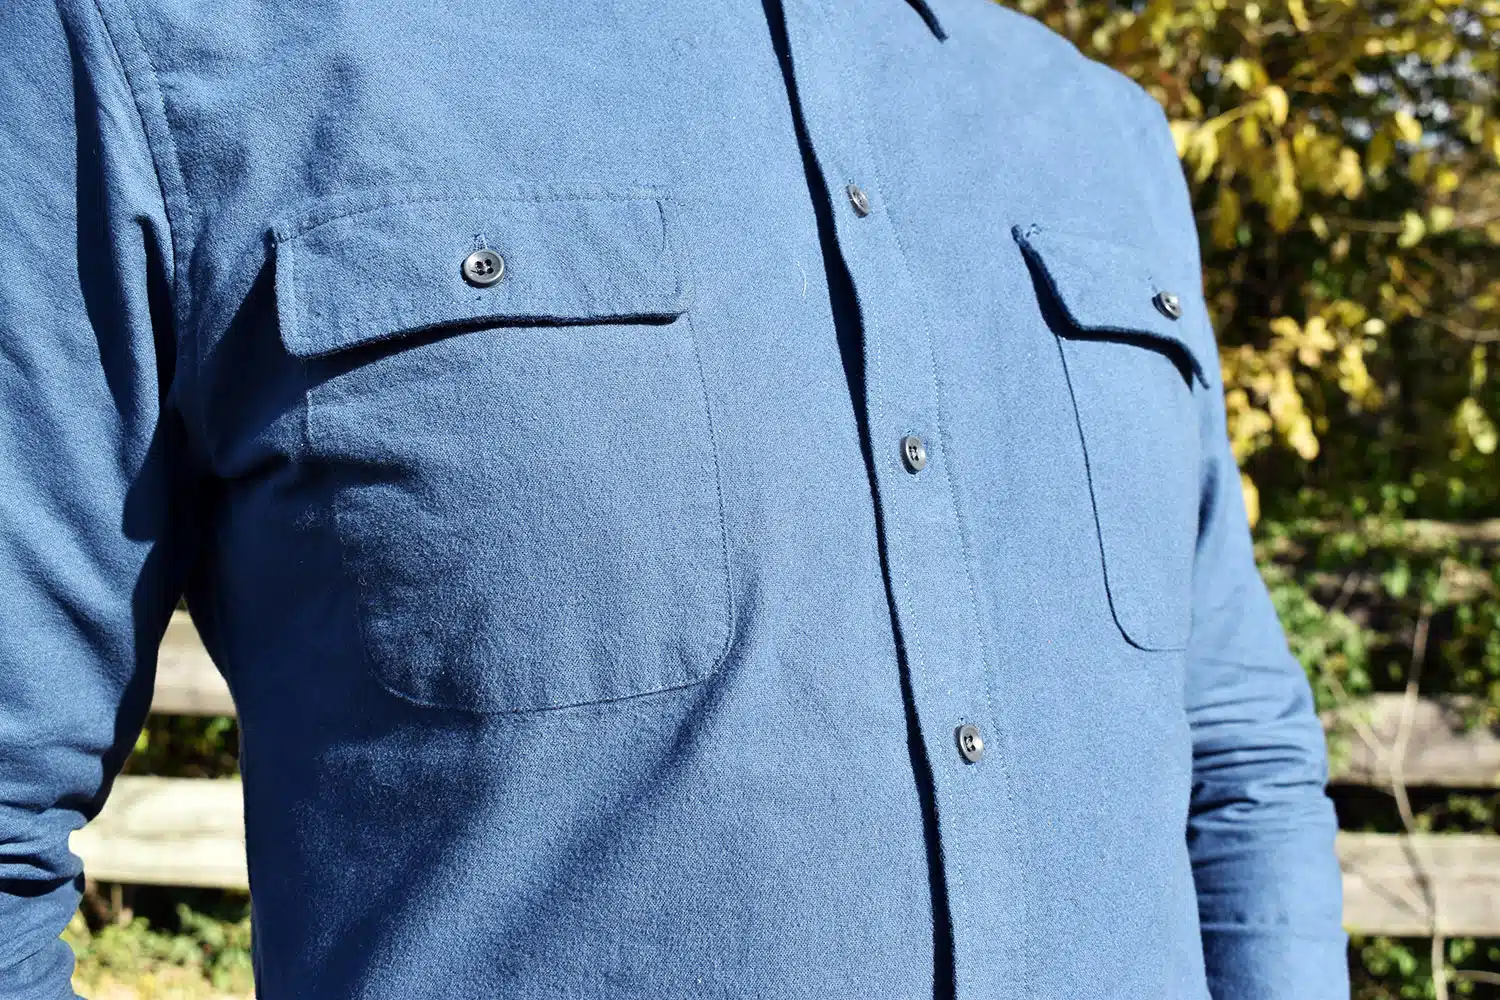 Taylor Stitch Yosemite shirt buttons close up